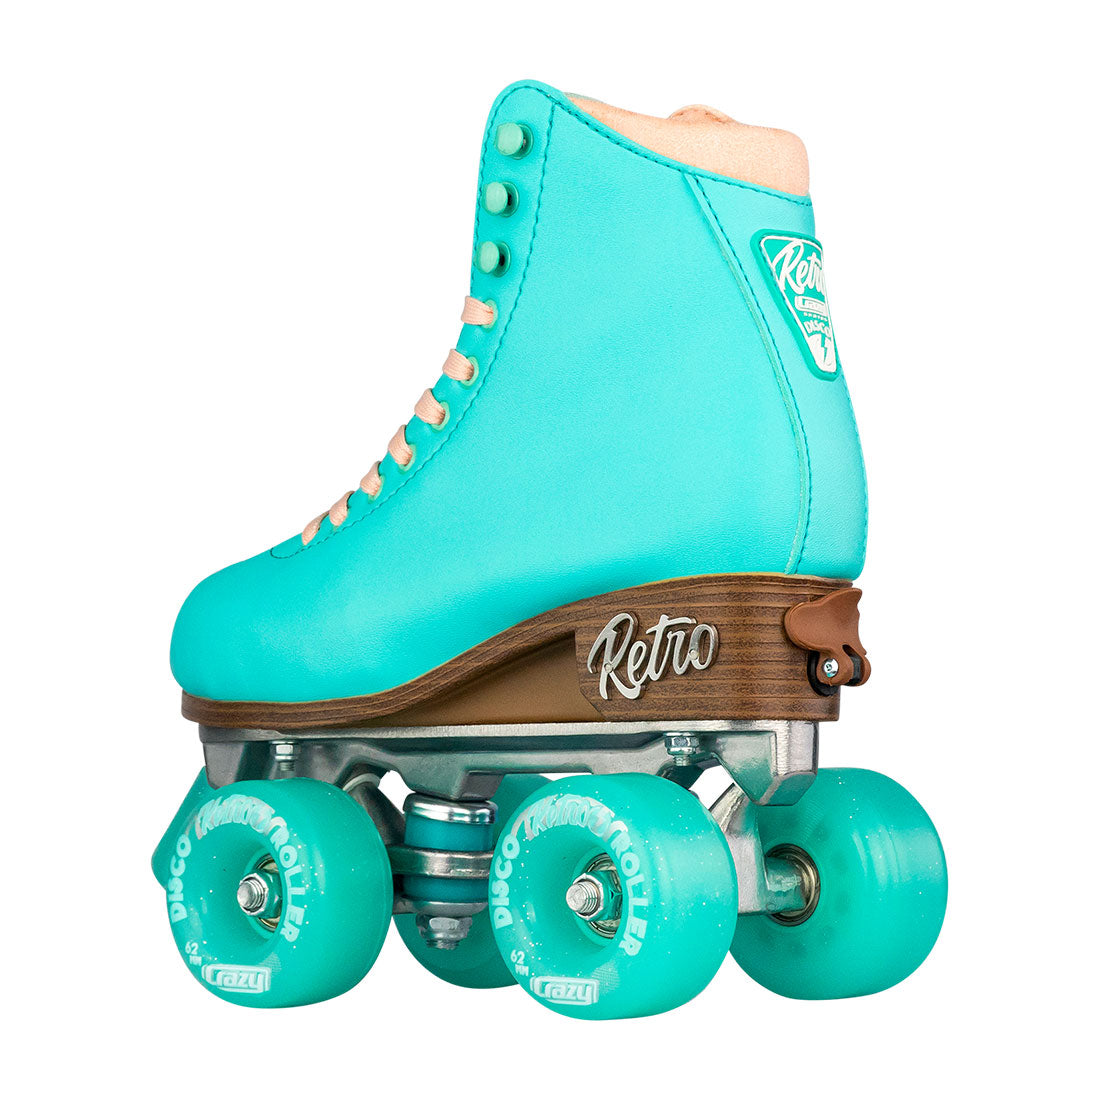 Crazy Retro Roller Teal - Kids Adjustable Roller Skates